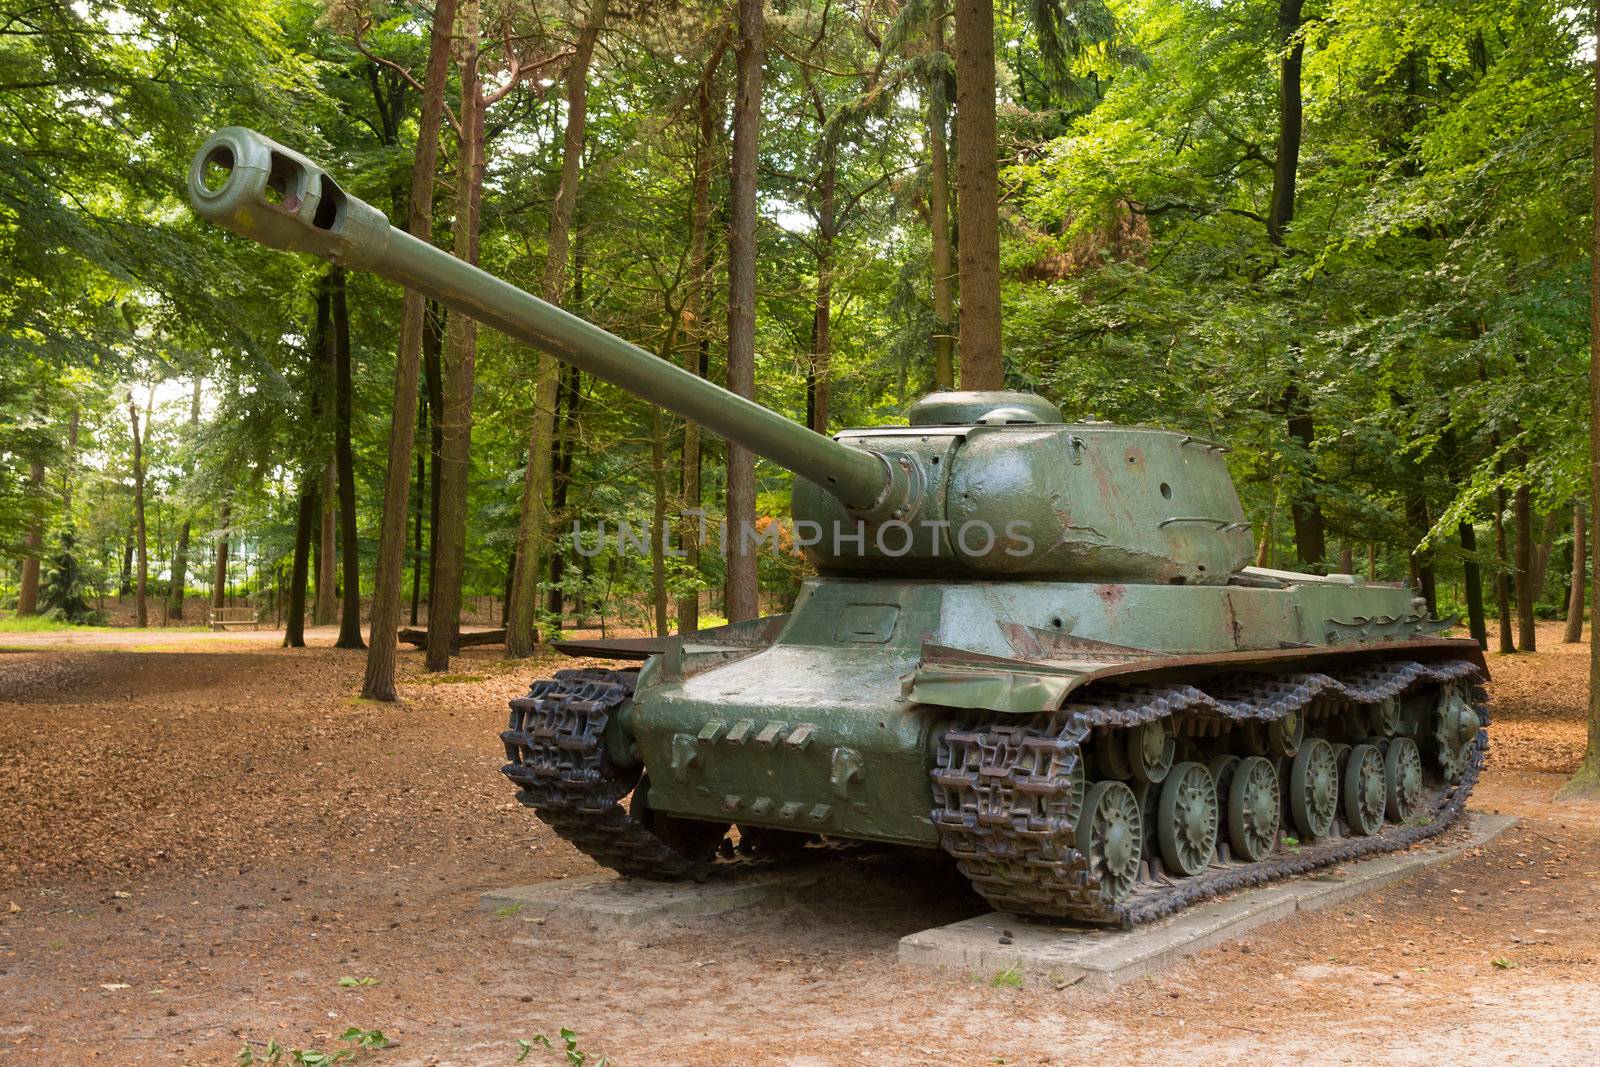 WW2 battle tank in public parc